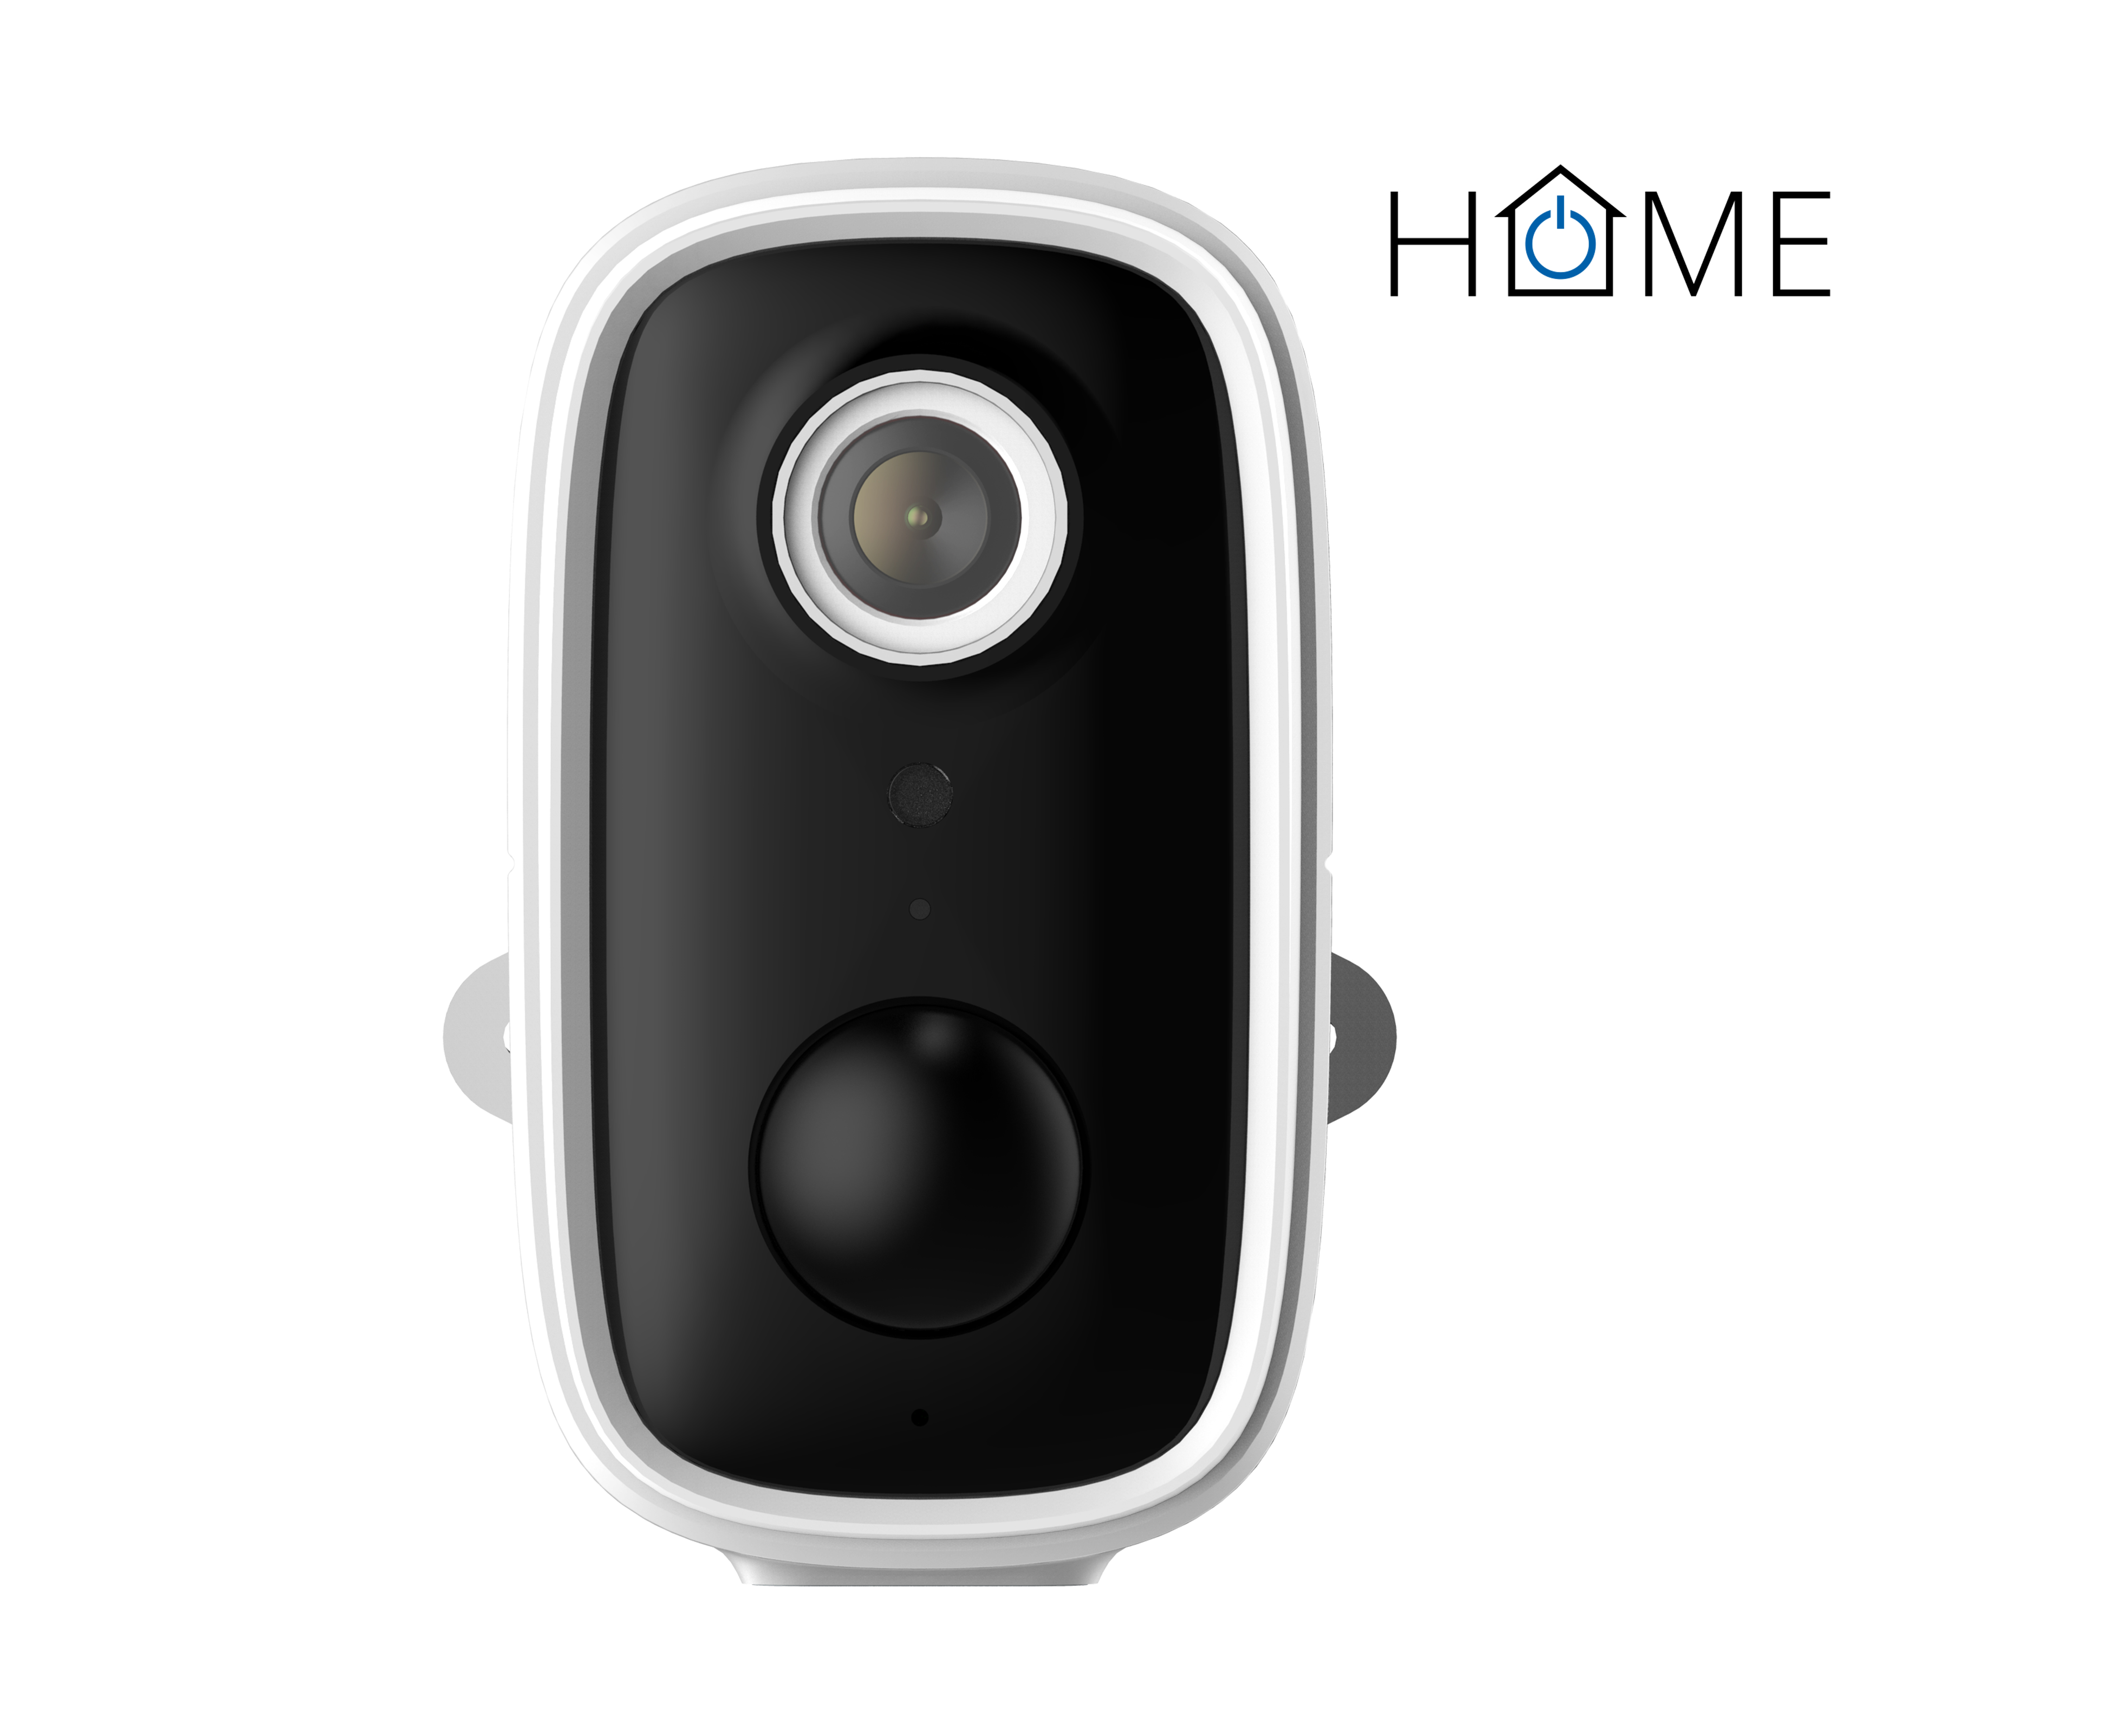 Obrázek iGET HOME Camera CS9 Battery - WiFi IP FullHD 1080p kamera, noční vidění, dvoucestné audio, IP65